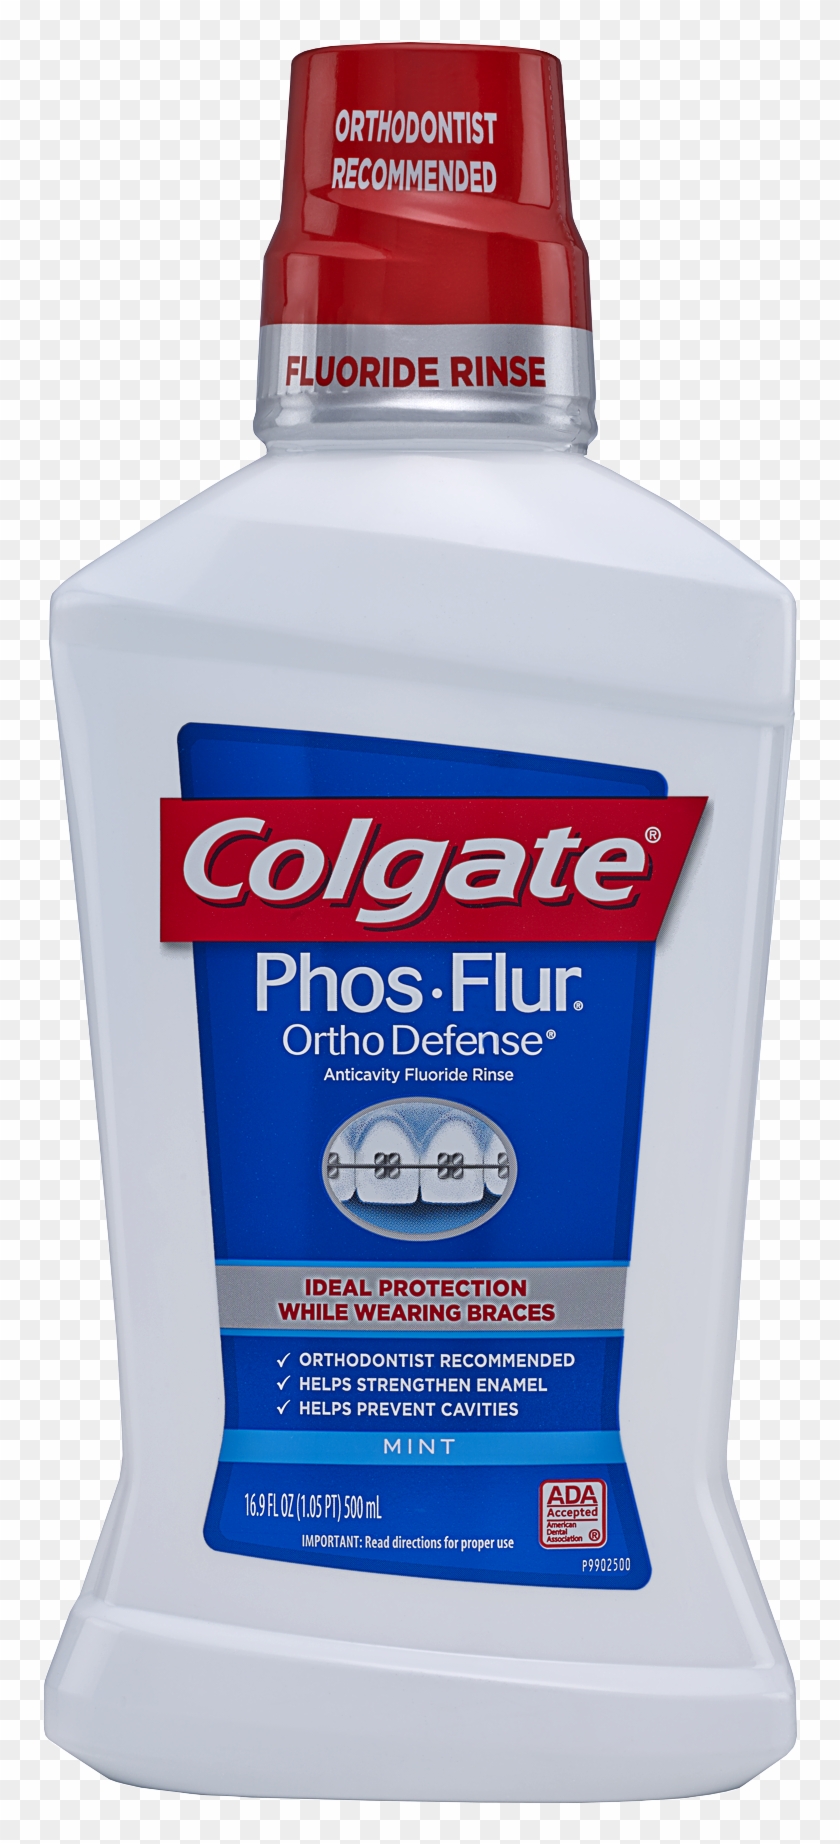 Colgate Phos-flur Mouthwash For Braces, Mint - Colgate Phos Flur Mouthwash Clipart #3280049